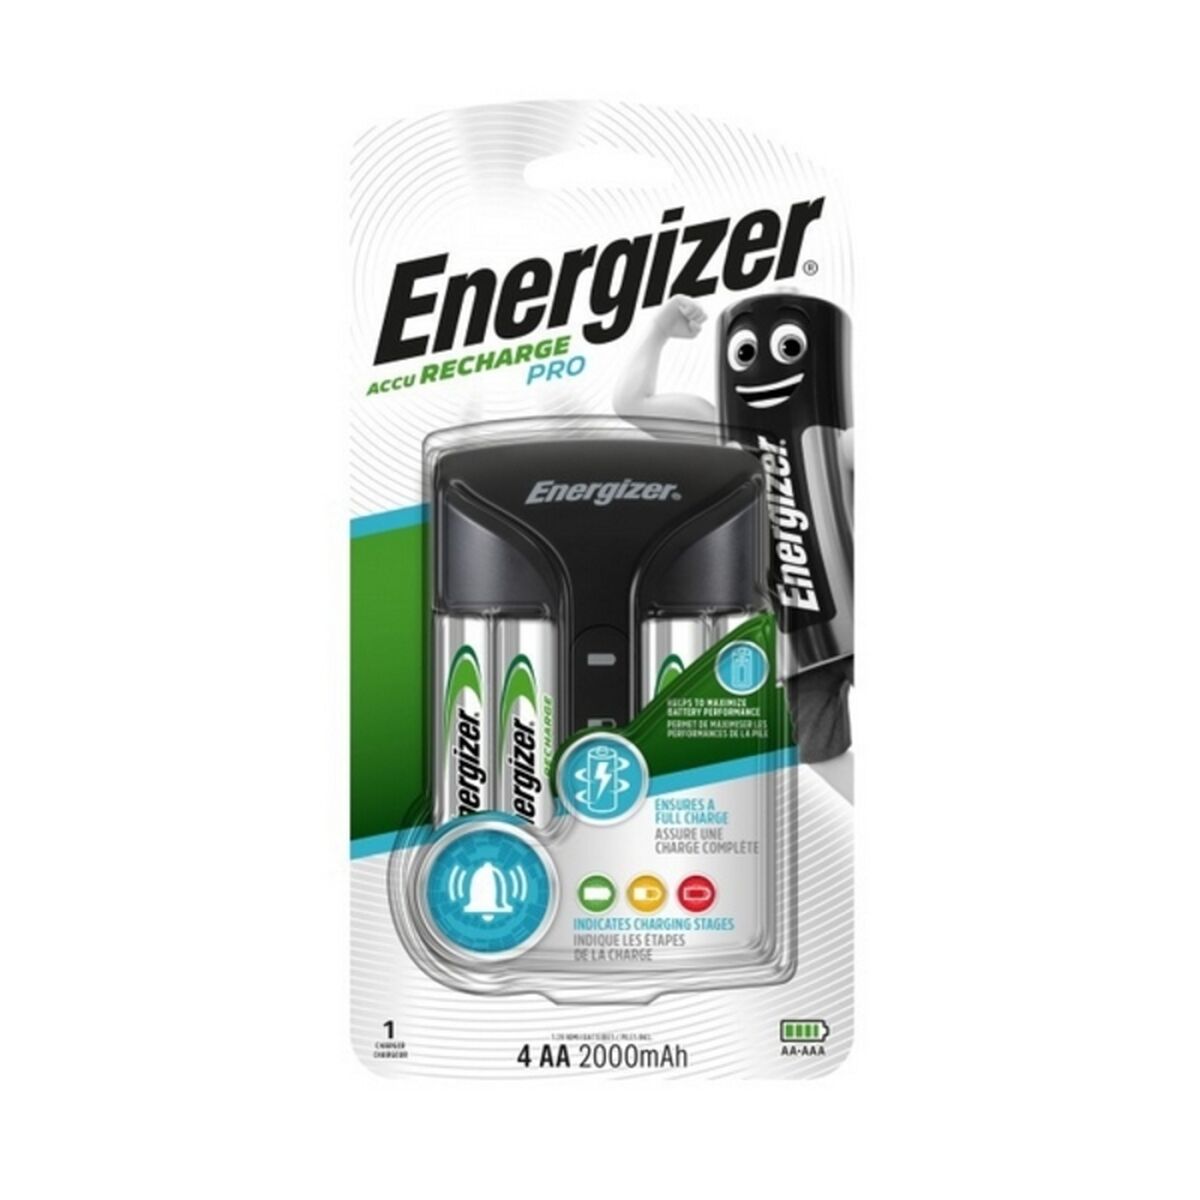 Cargador + Pilas Recargables Energizer 639837